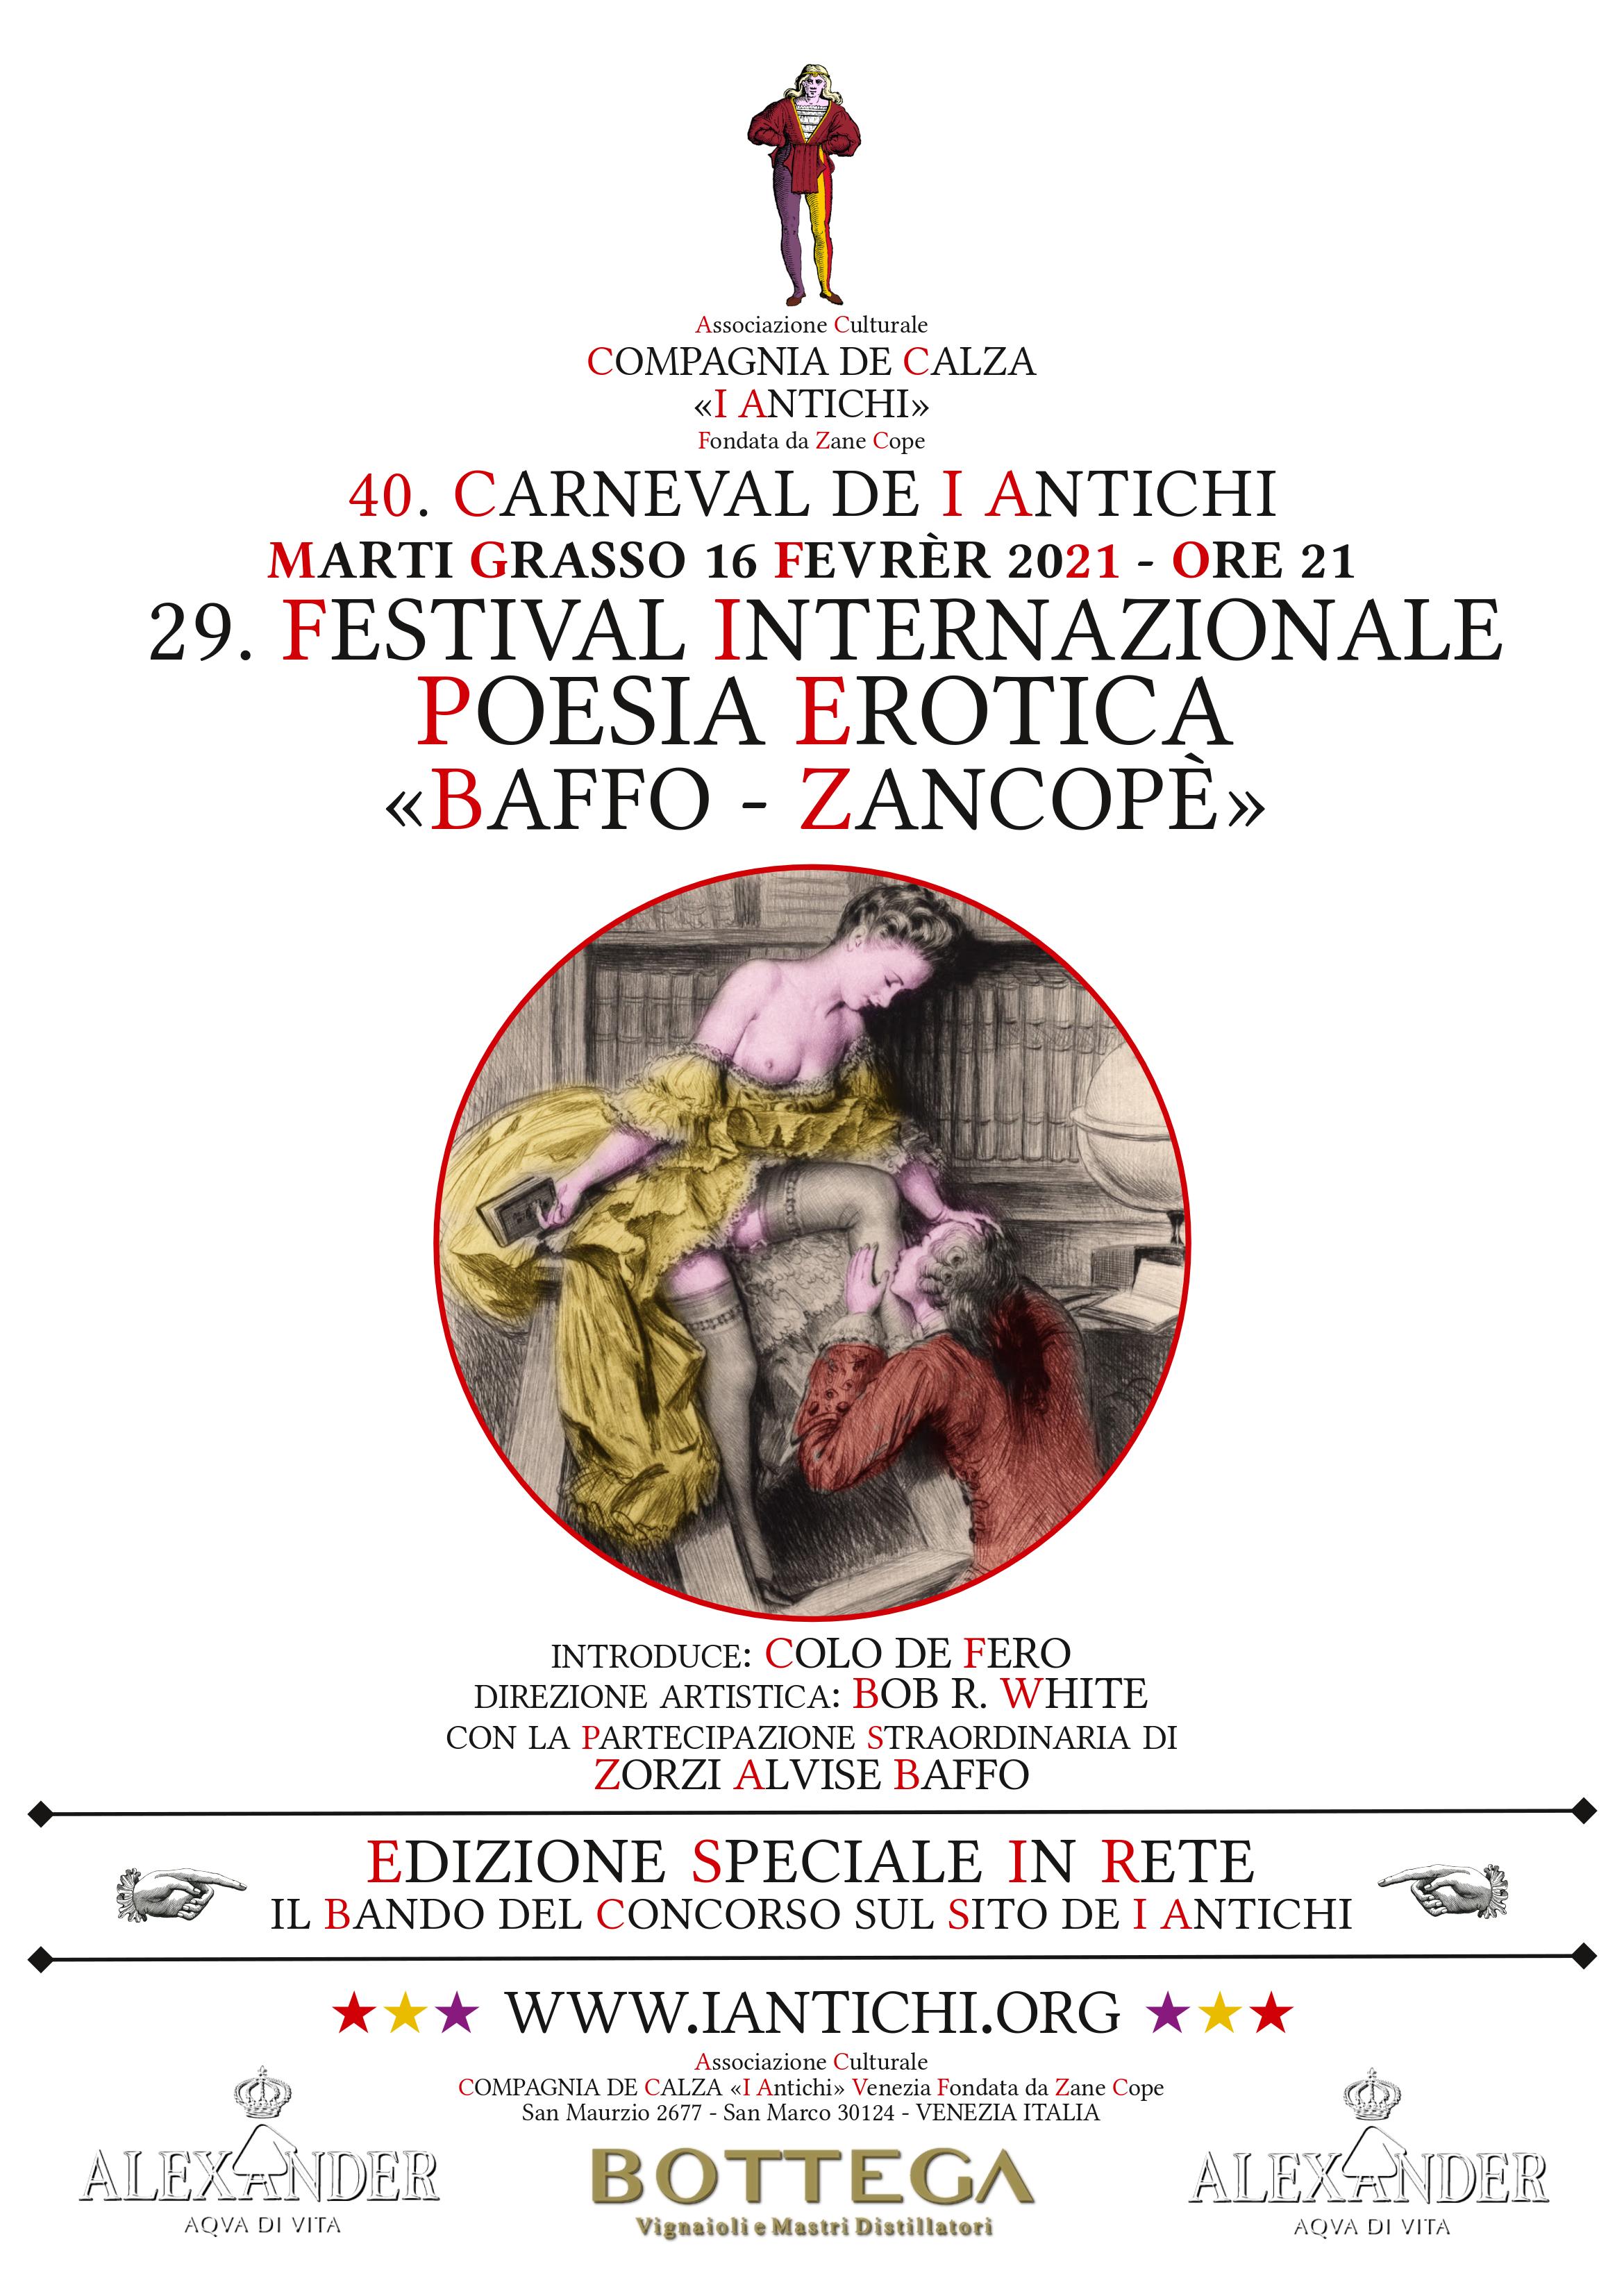 29. Festival Internazionale di Poesia Erotica Baffo Zancopè Marti Grasso 16 Febbraio 2021 IN RETE.